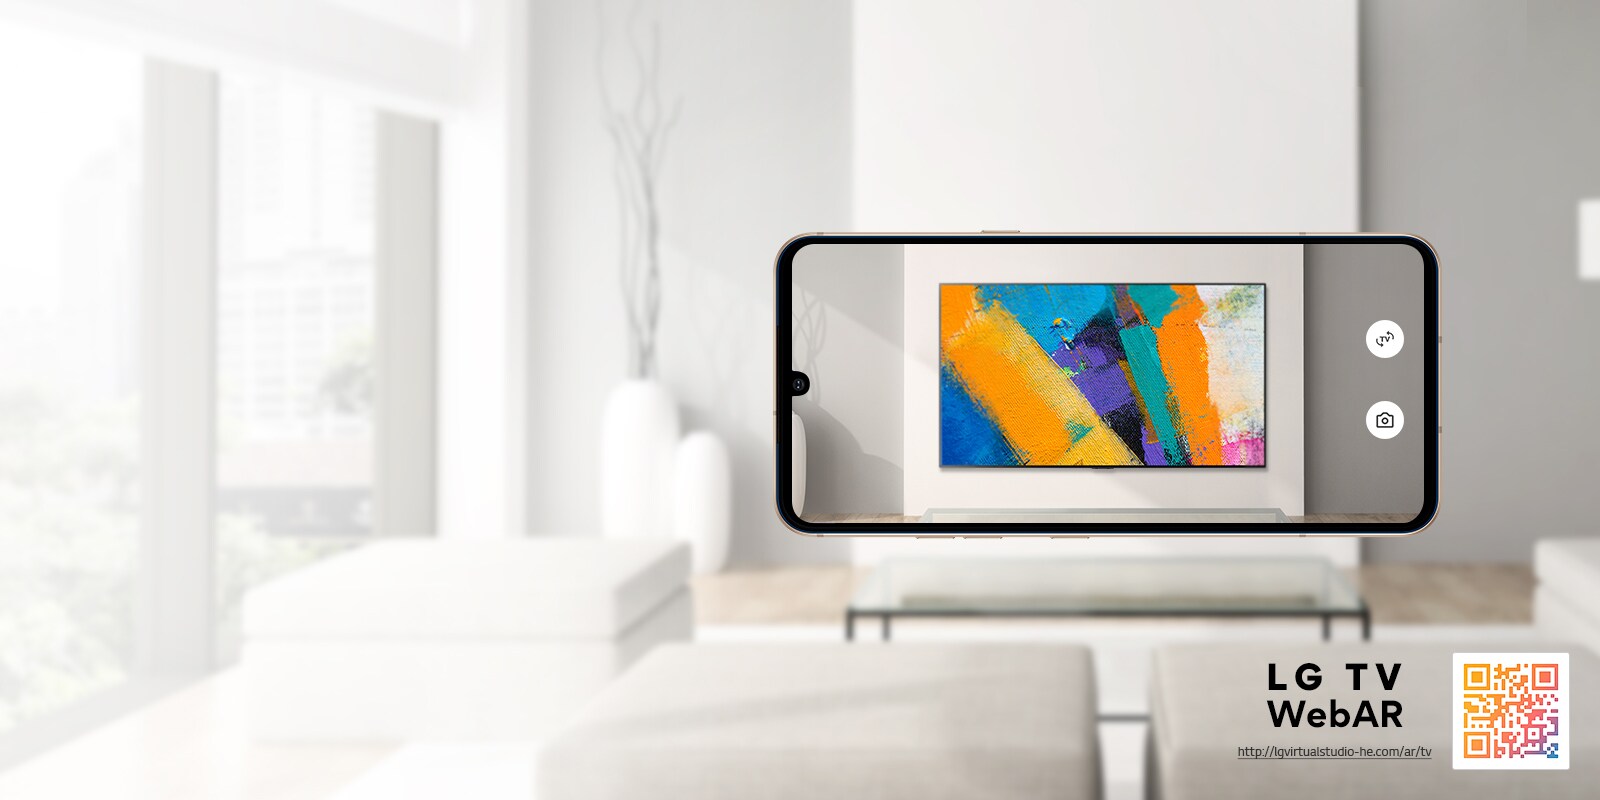 Tai yra LG OLED televizoriaus vaizdo „Web AR“ imitacija. Mobiliųjų telefonų vaizdai persikloja minimalistinėje erdvėje. Apačioje dešinėje pateikiamas QR kodas.